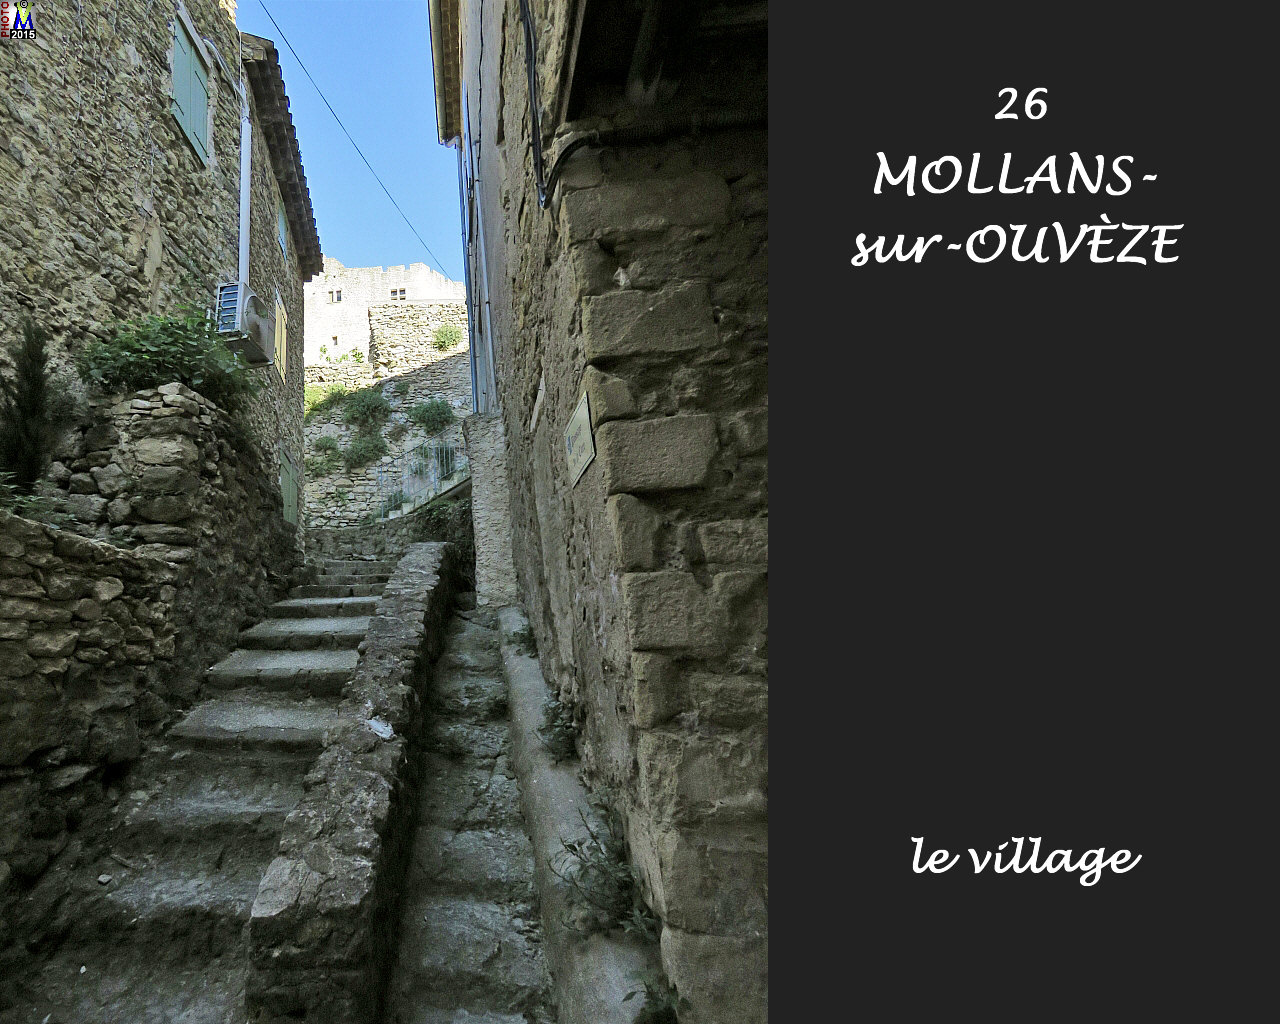 26MOLLANS-OUVEZE_village_126.jpg